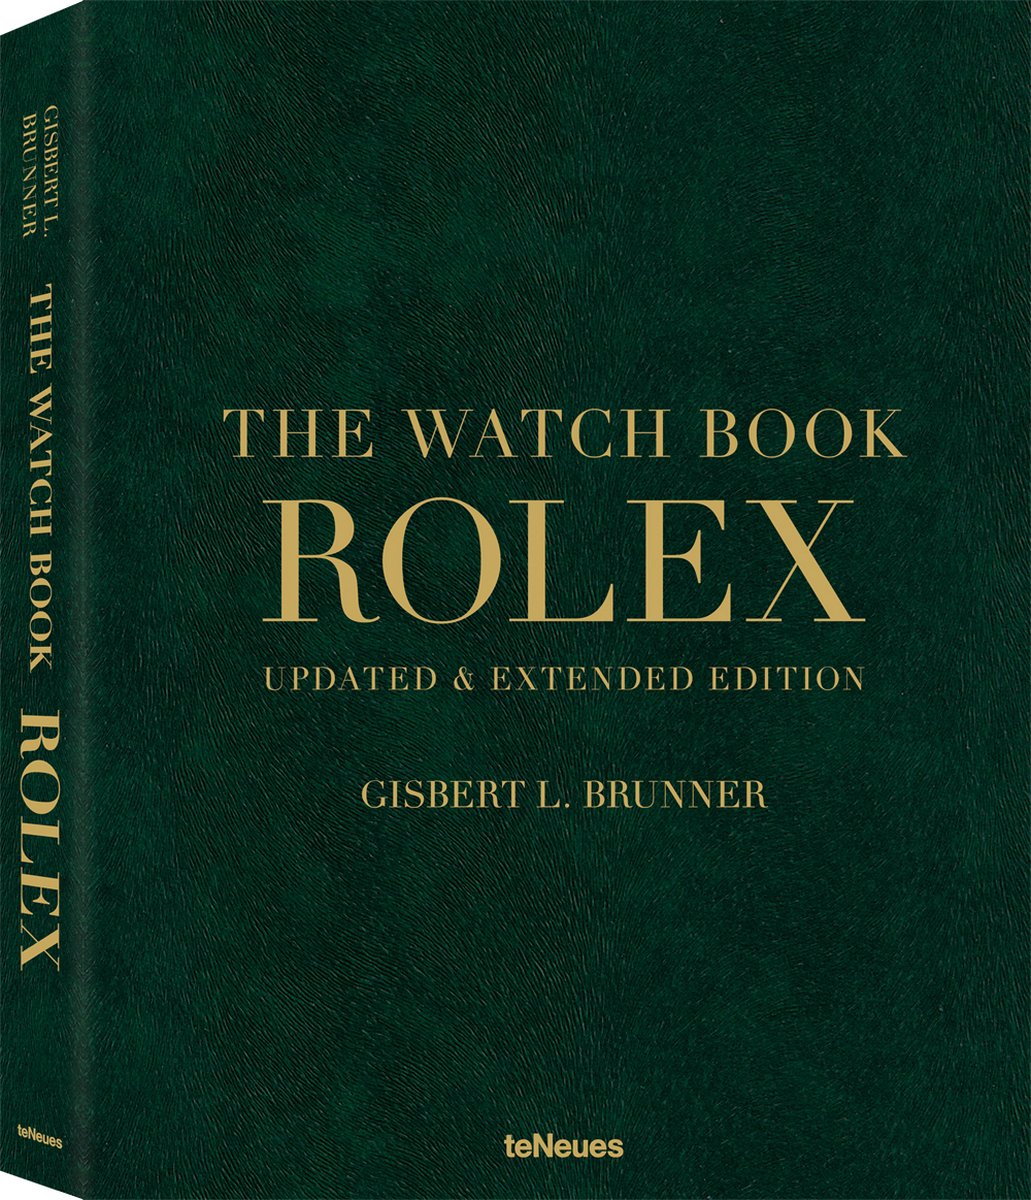 Rolex: The Watch Book (New, Extended Edition) - ,Gisbert,L Brunner